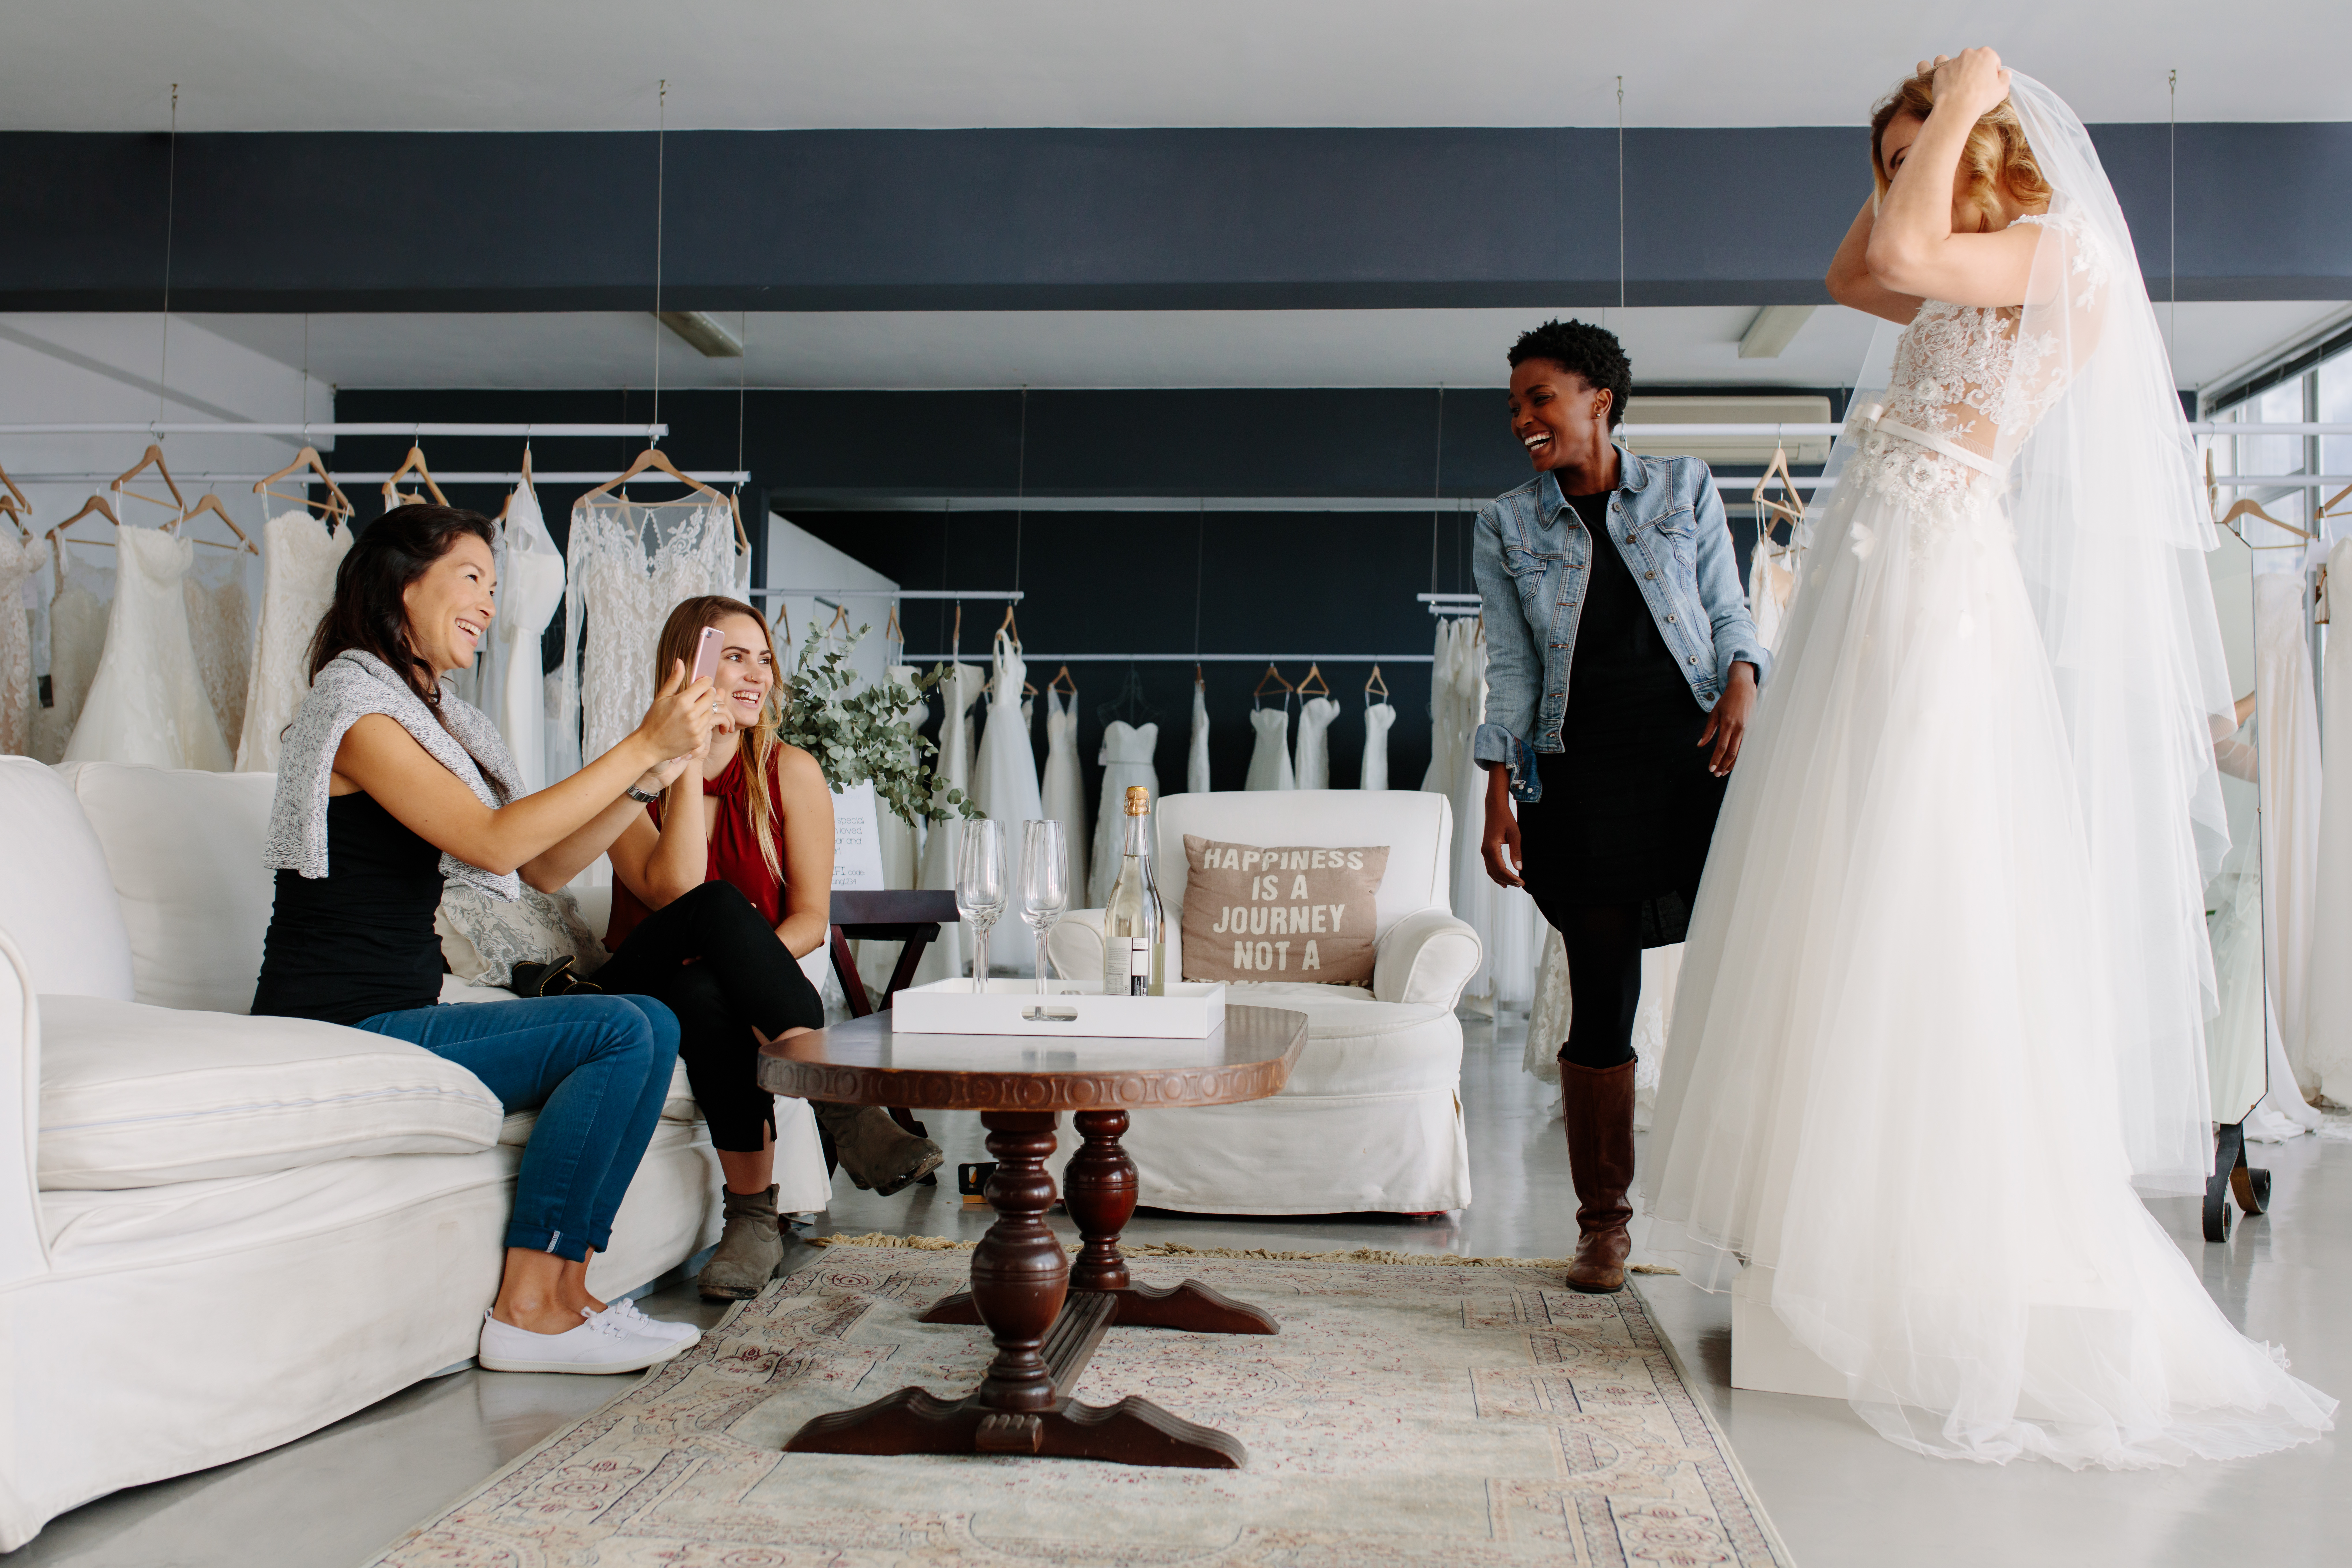 Une femme essayant une robe de mariée entourée de ses amies | Source : Shutterstock